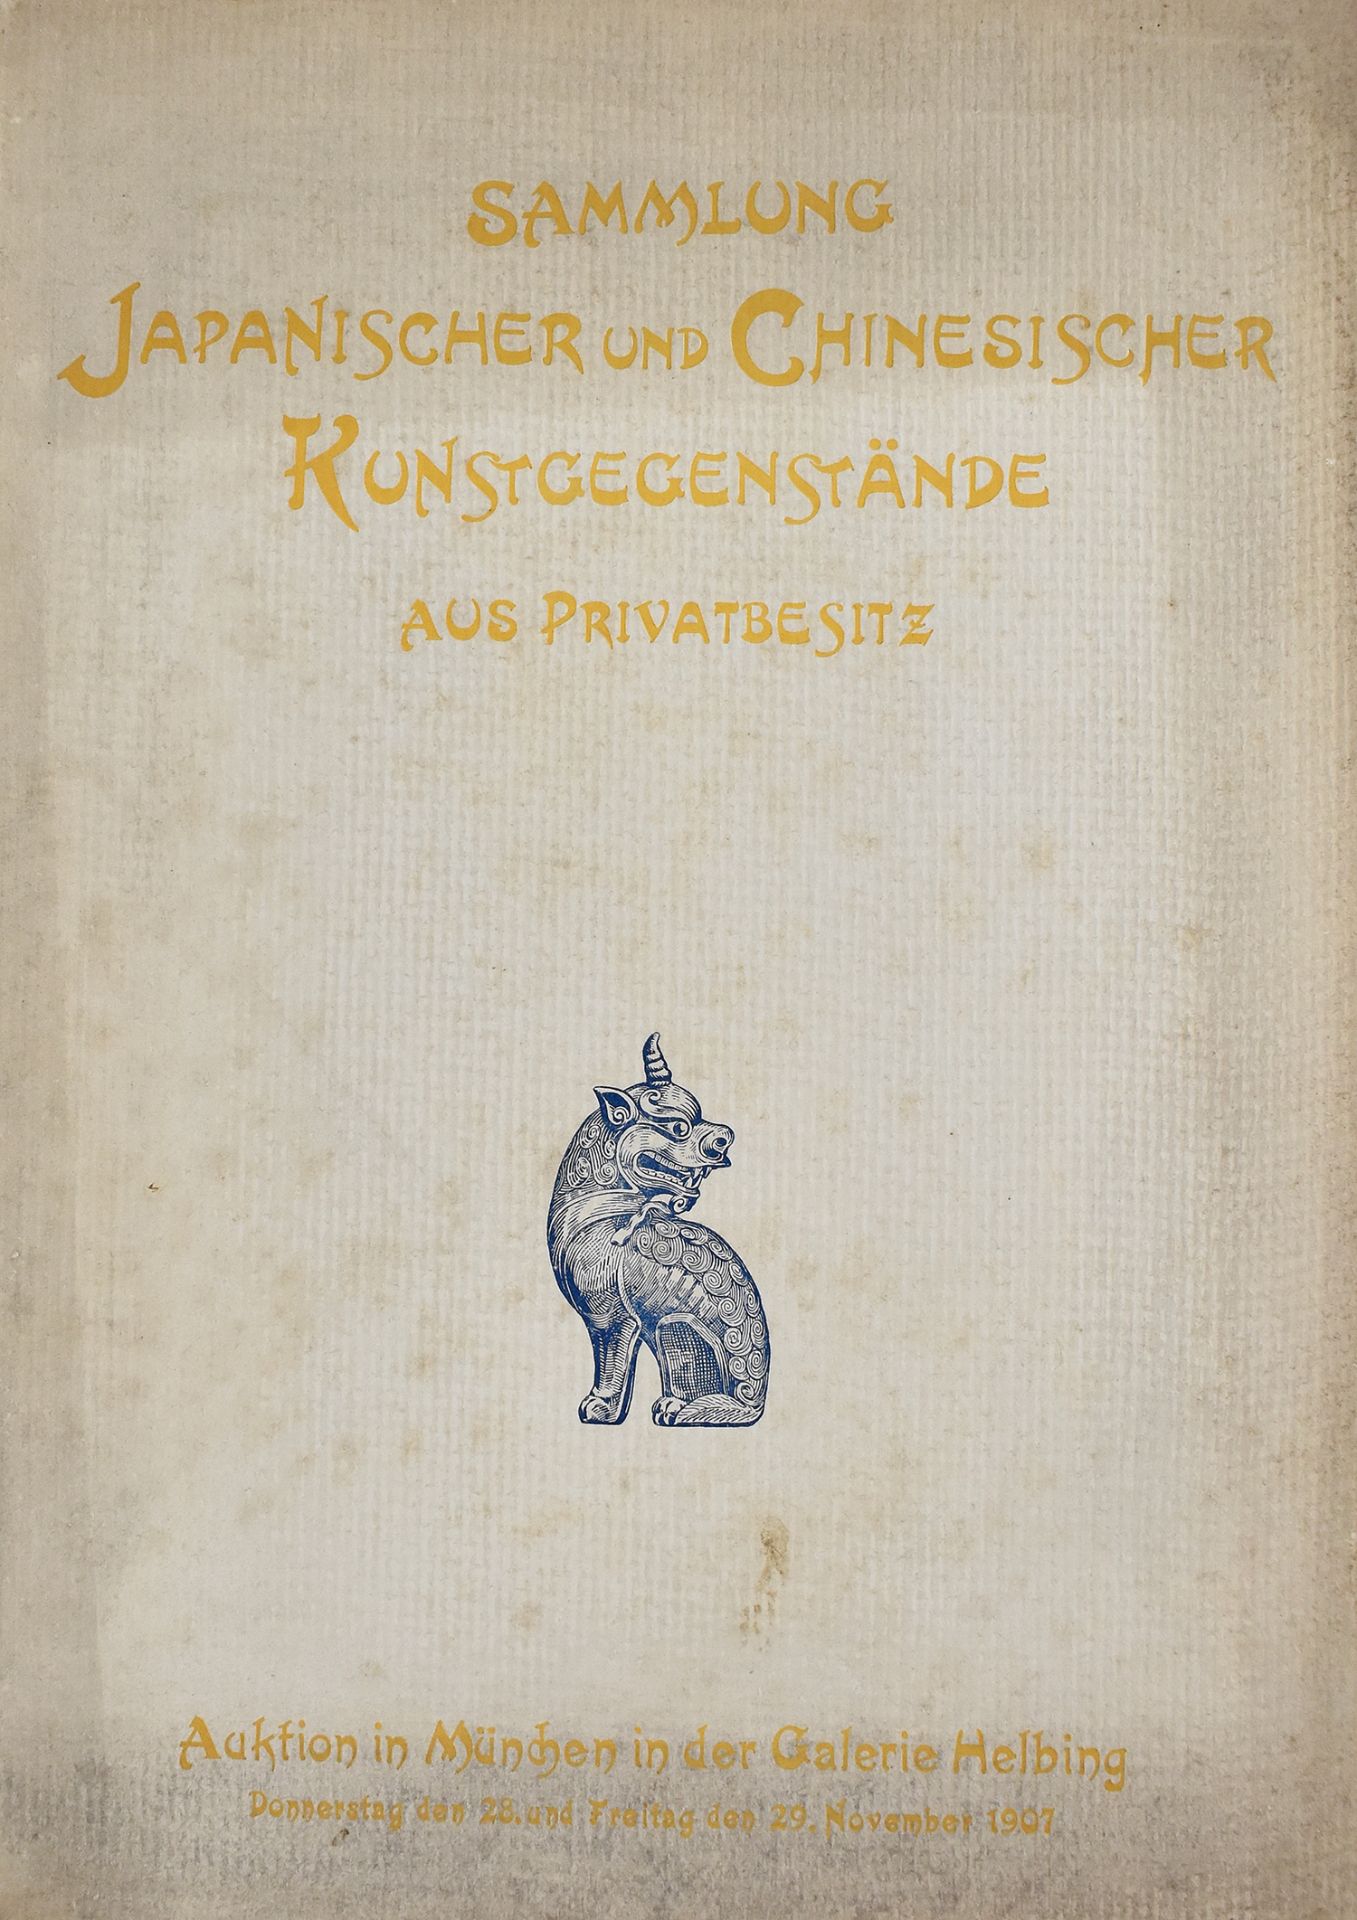 Helbing München 1907. Bedeutende Sammlung japanischer und chinesischer Kunstgegenstände